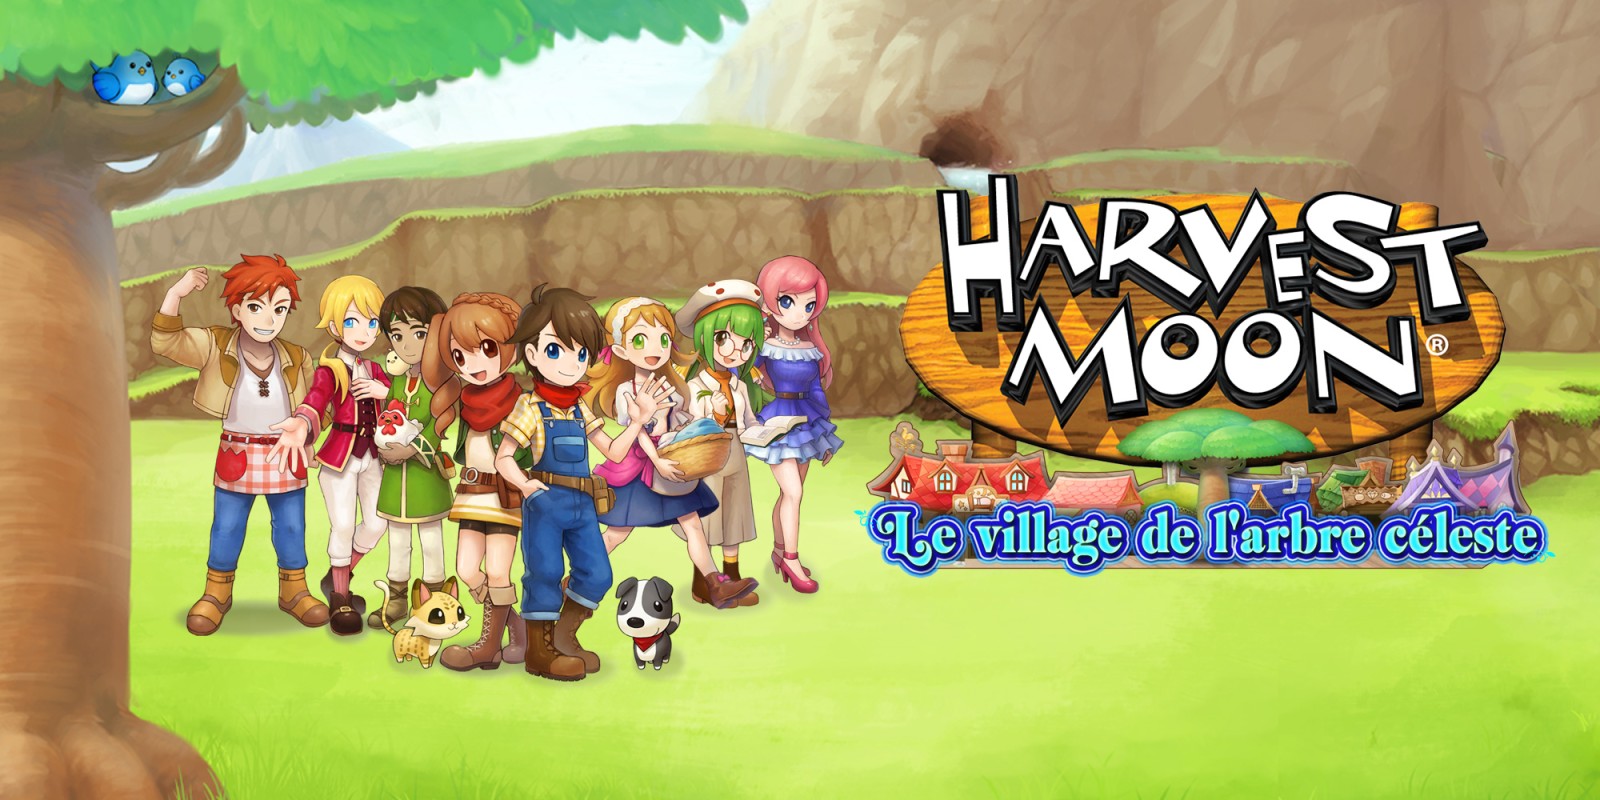 Harvest Moon: Le village de l'arbre céleste